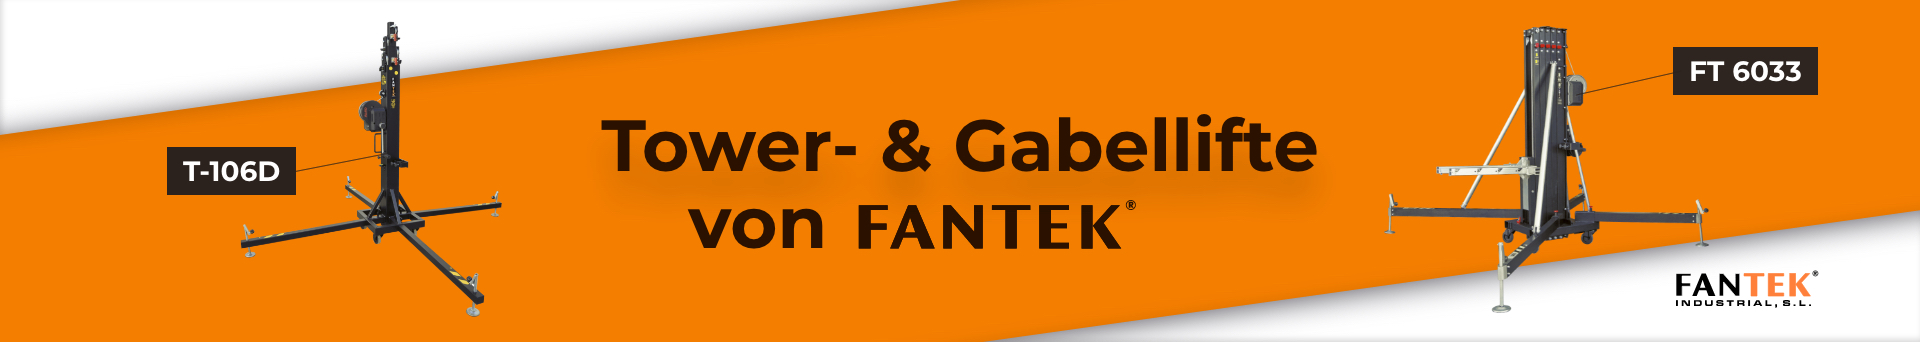 Fantek banner b